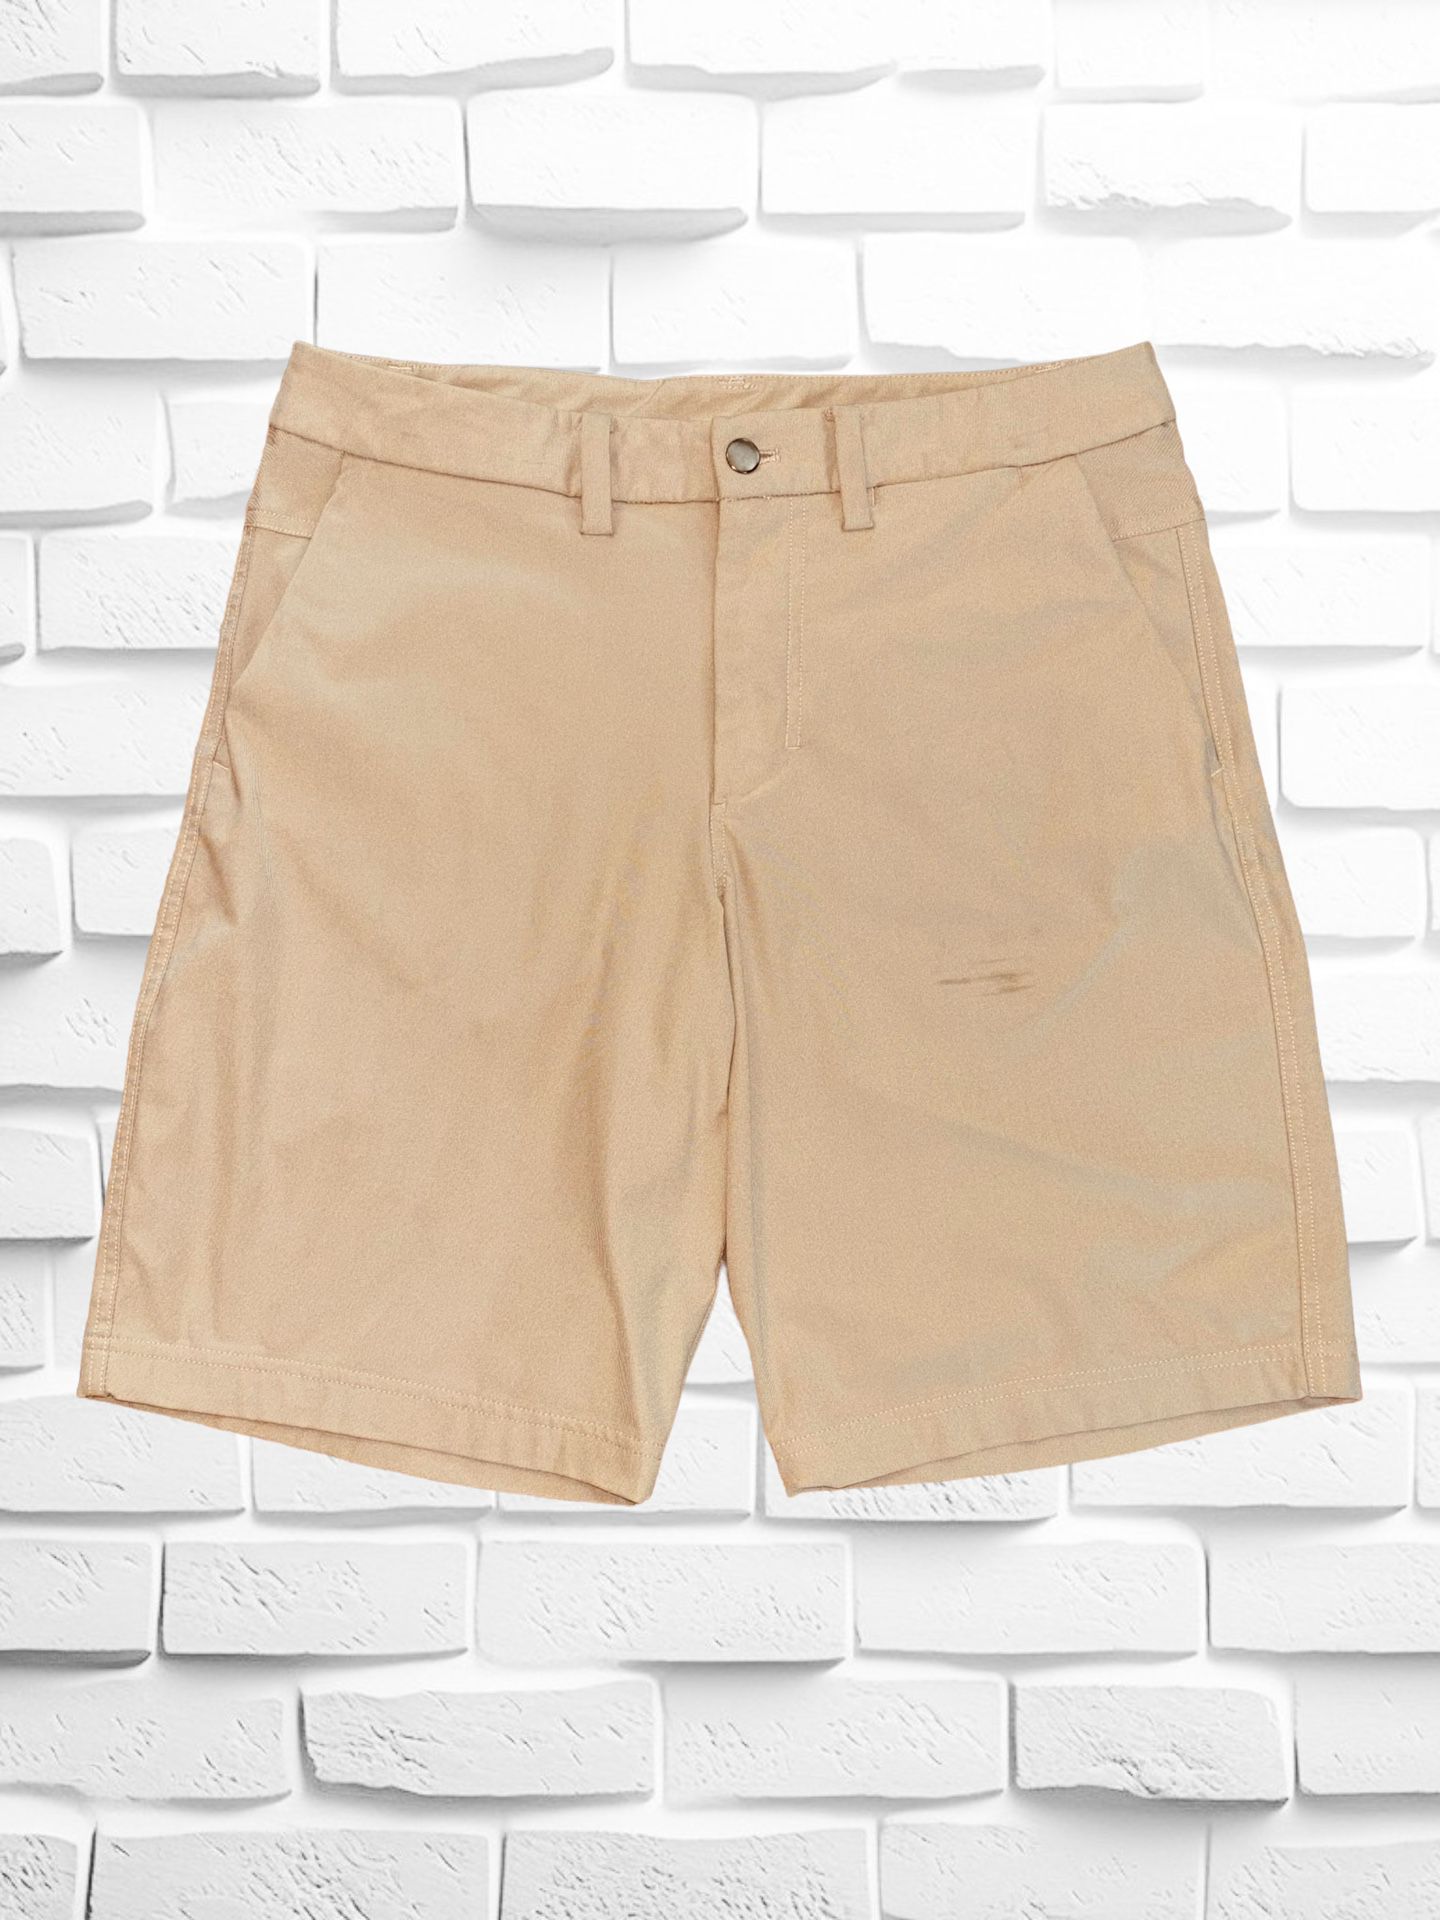 Lululemon Men’s Size 34 Commission Shorts • Flat Front Khaki Golf Range Casual